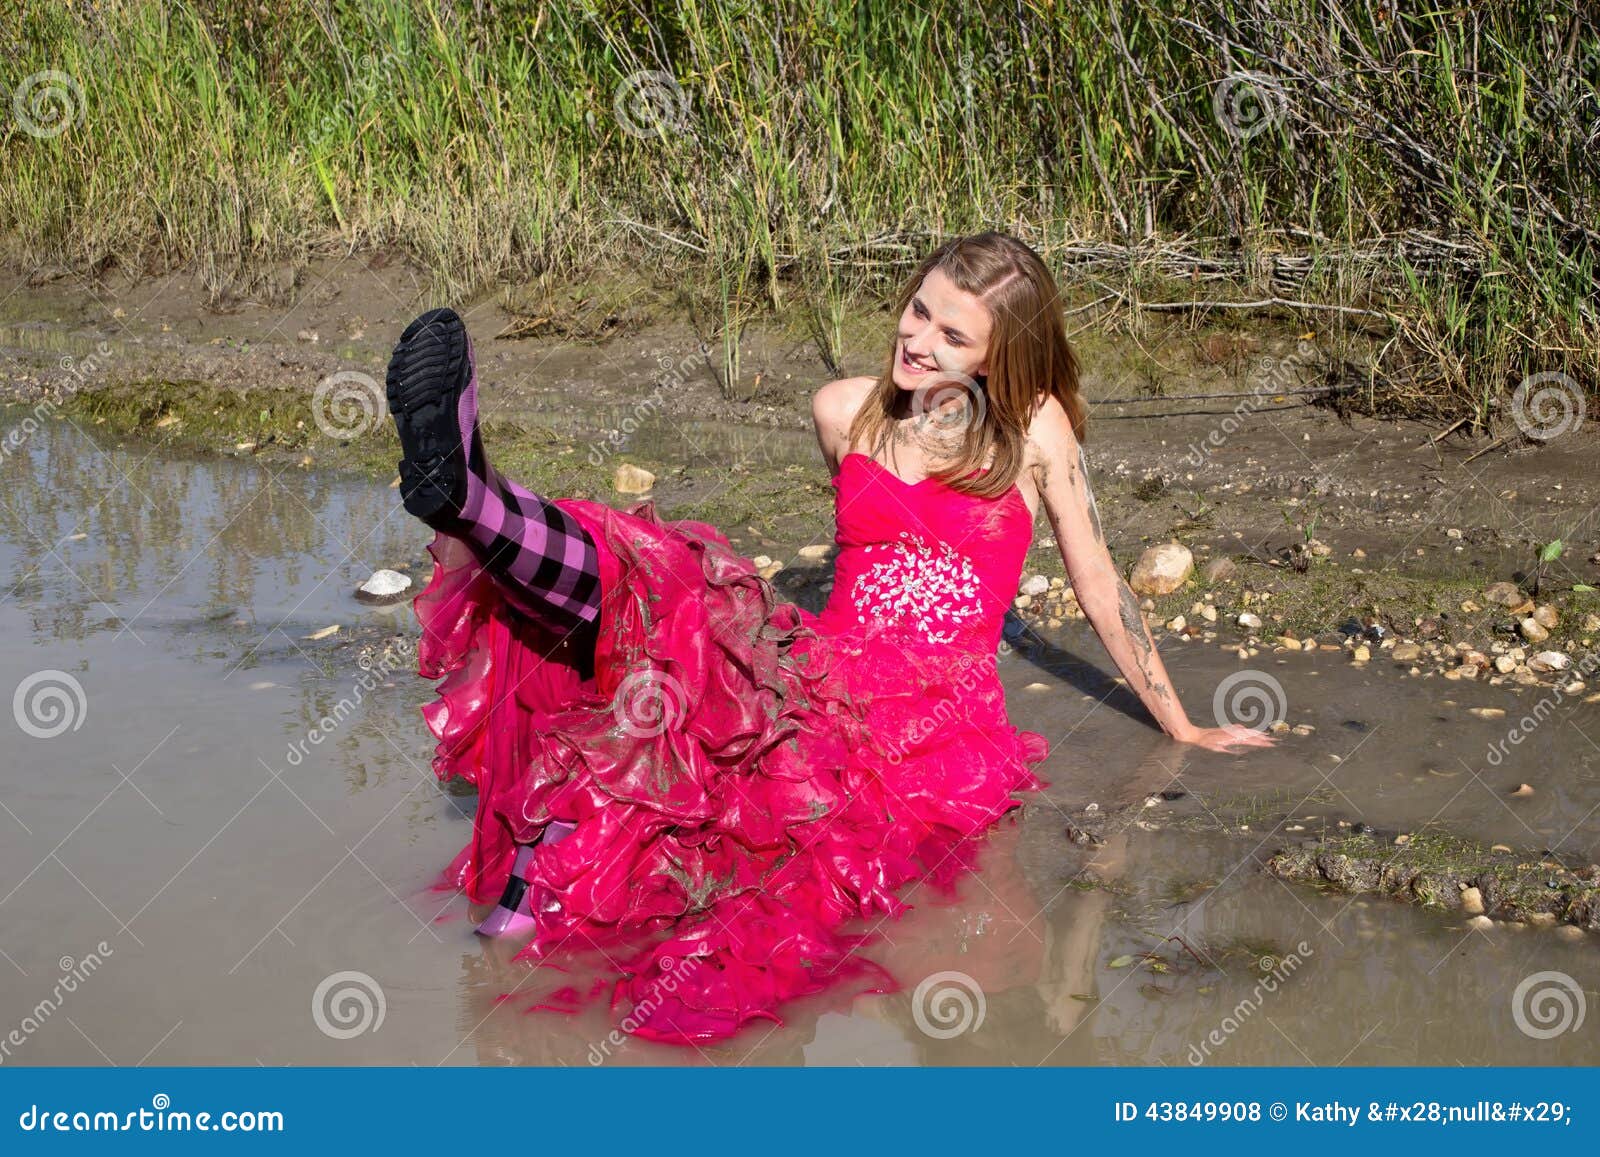 Prom Dress Mud Fight